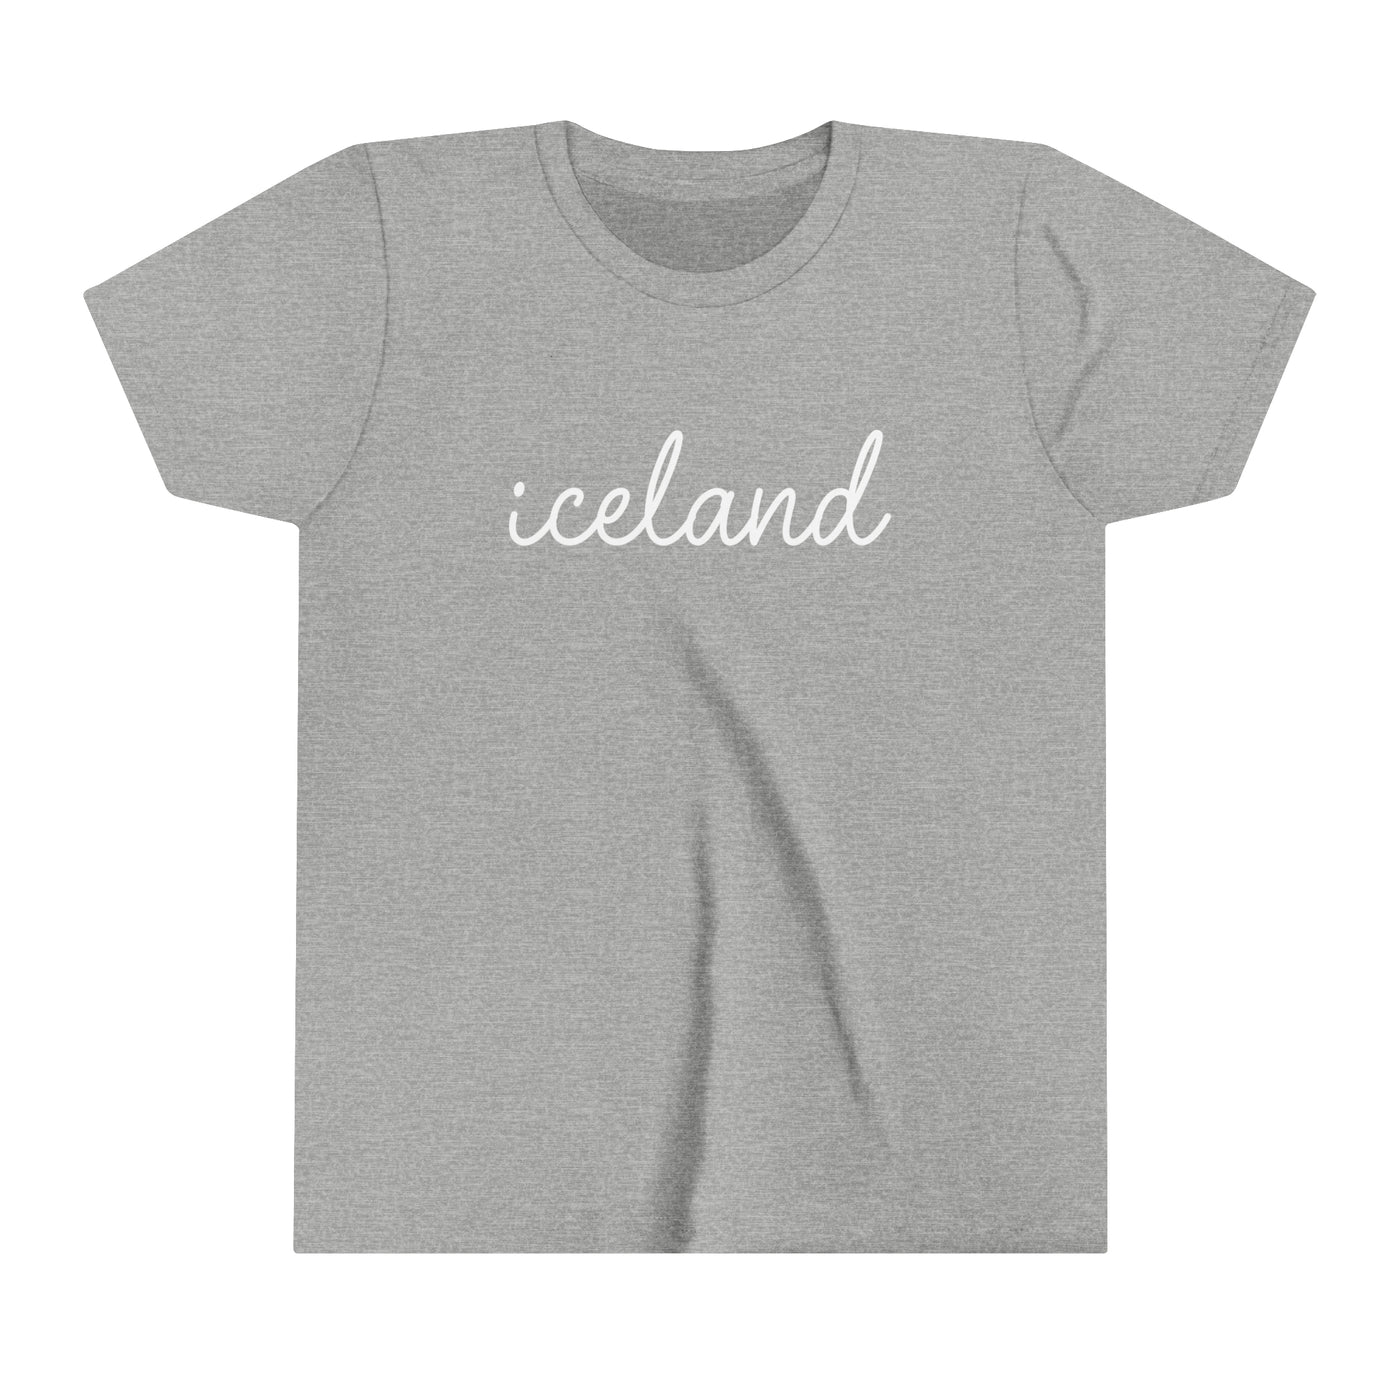 Iceland Script Kids T-Shirt